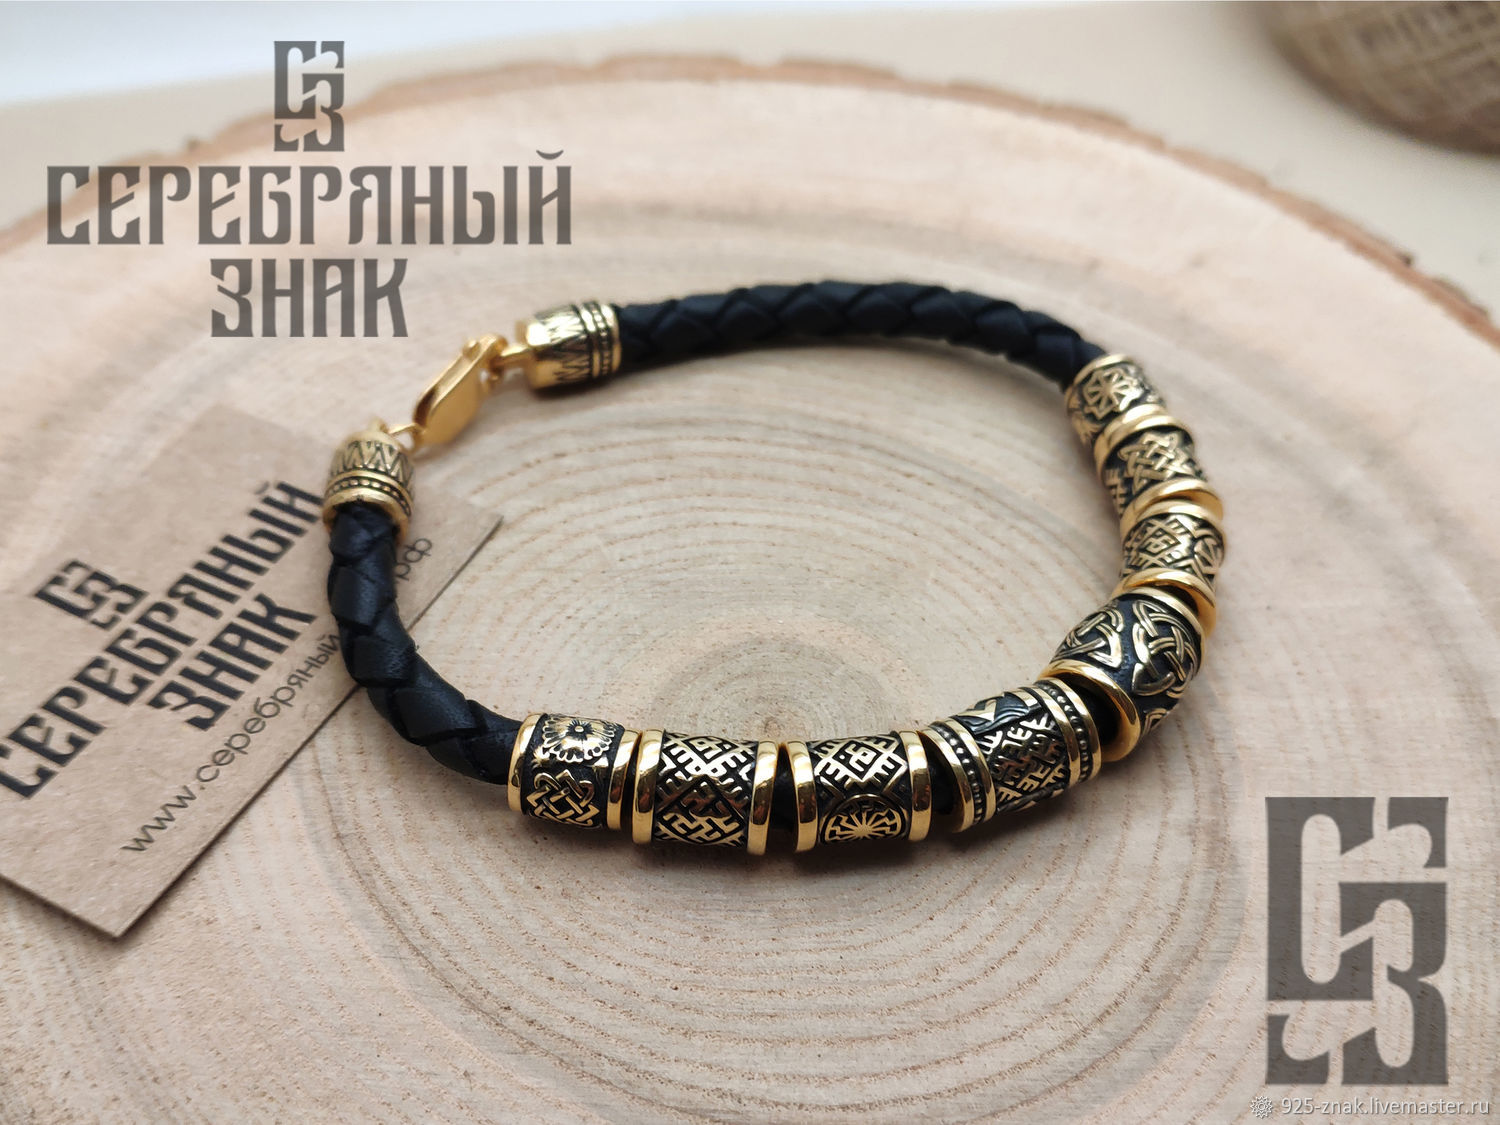 Oberezhny dial bracelet, Bead bracelet, St. Petersburg,  Фото №1